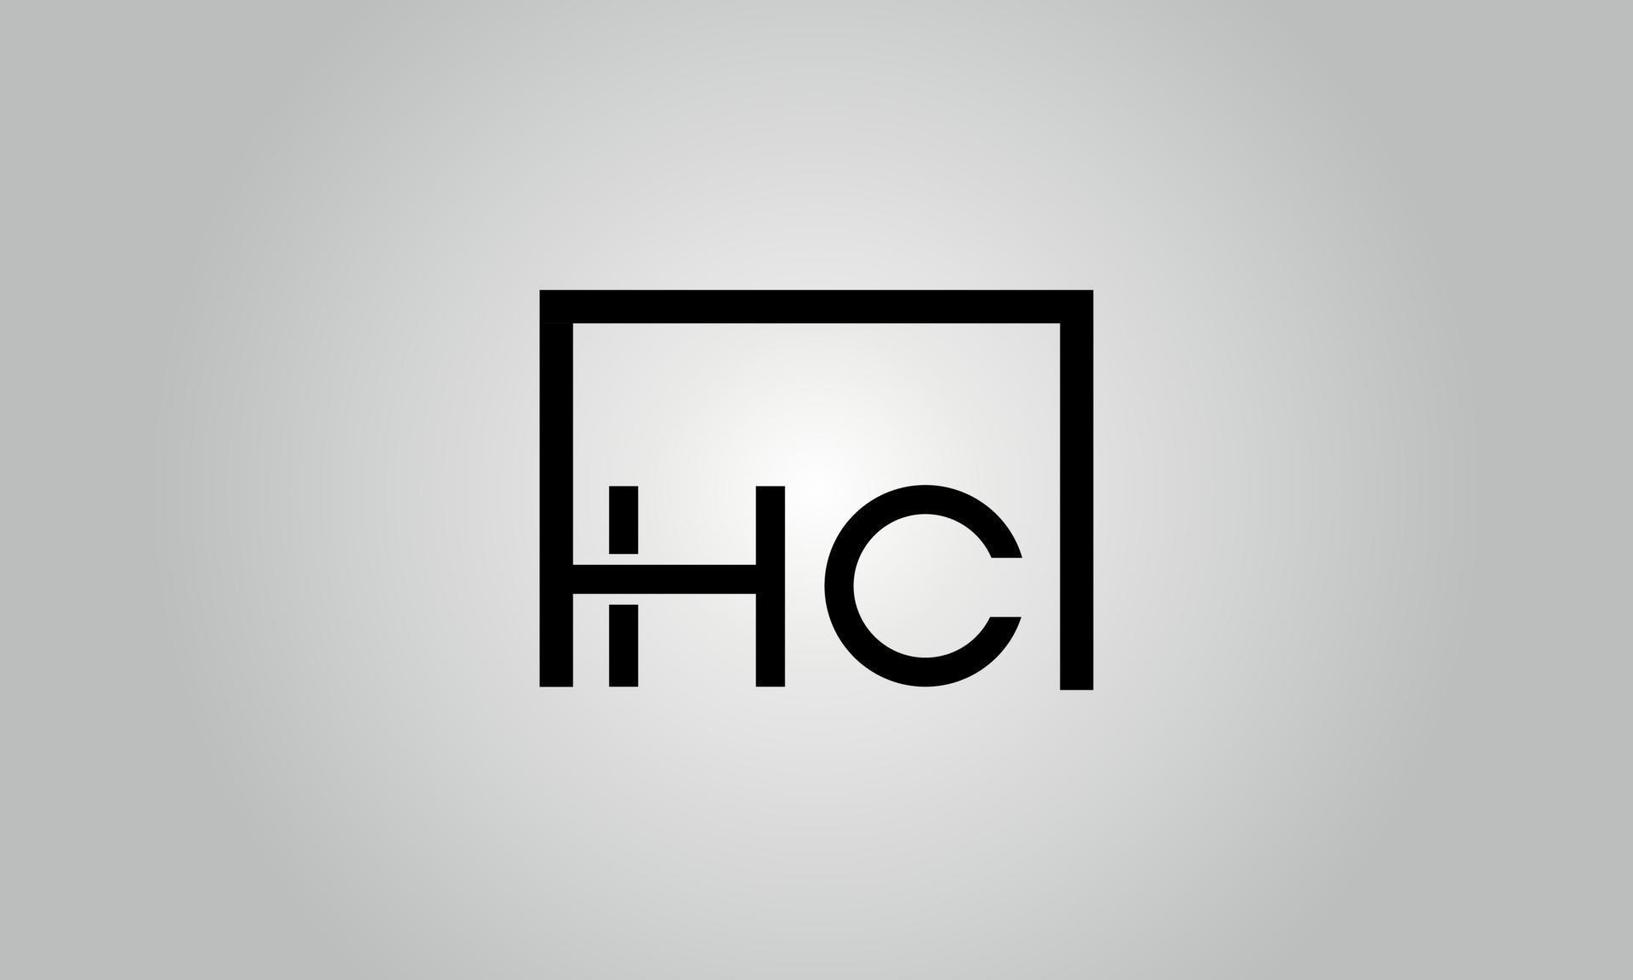 Buchstabe hc-Logo-Design. hc-Logo mit quadratischer Form in schwarzen Farben Vektor kostenlose Vektorvorlage.